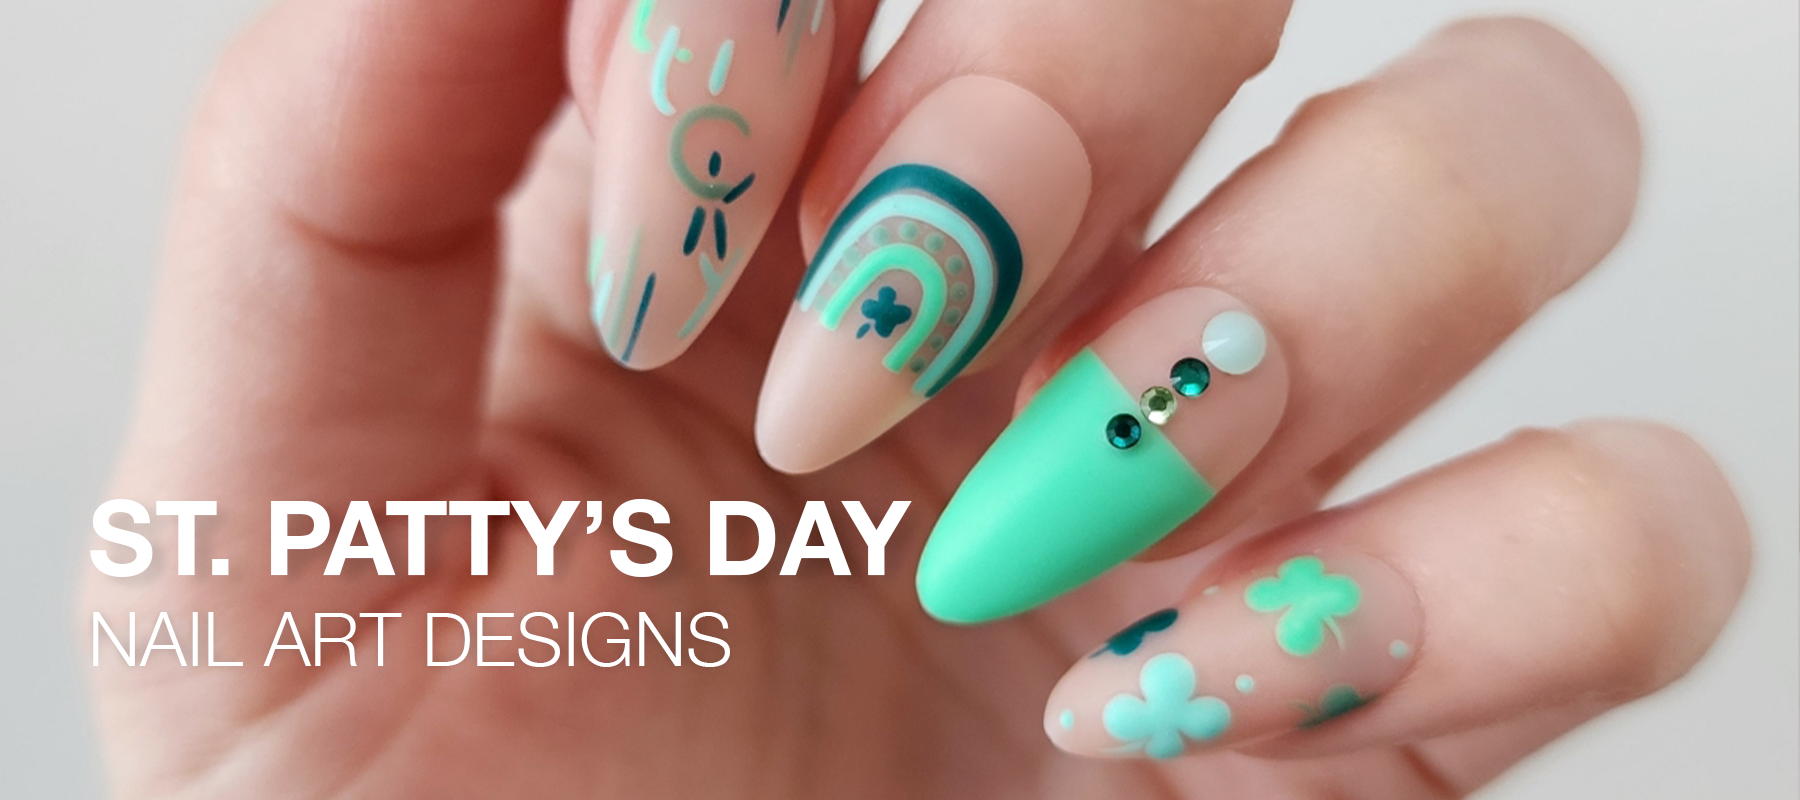 St. Patrick's Day Nail Art Inspiration